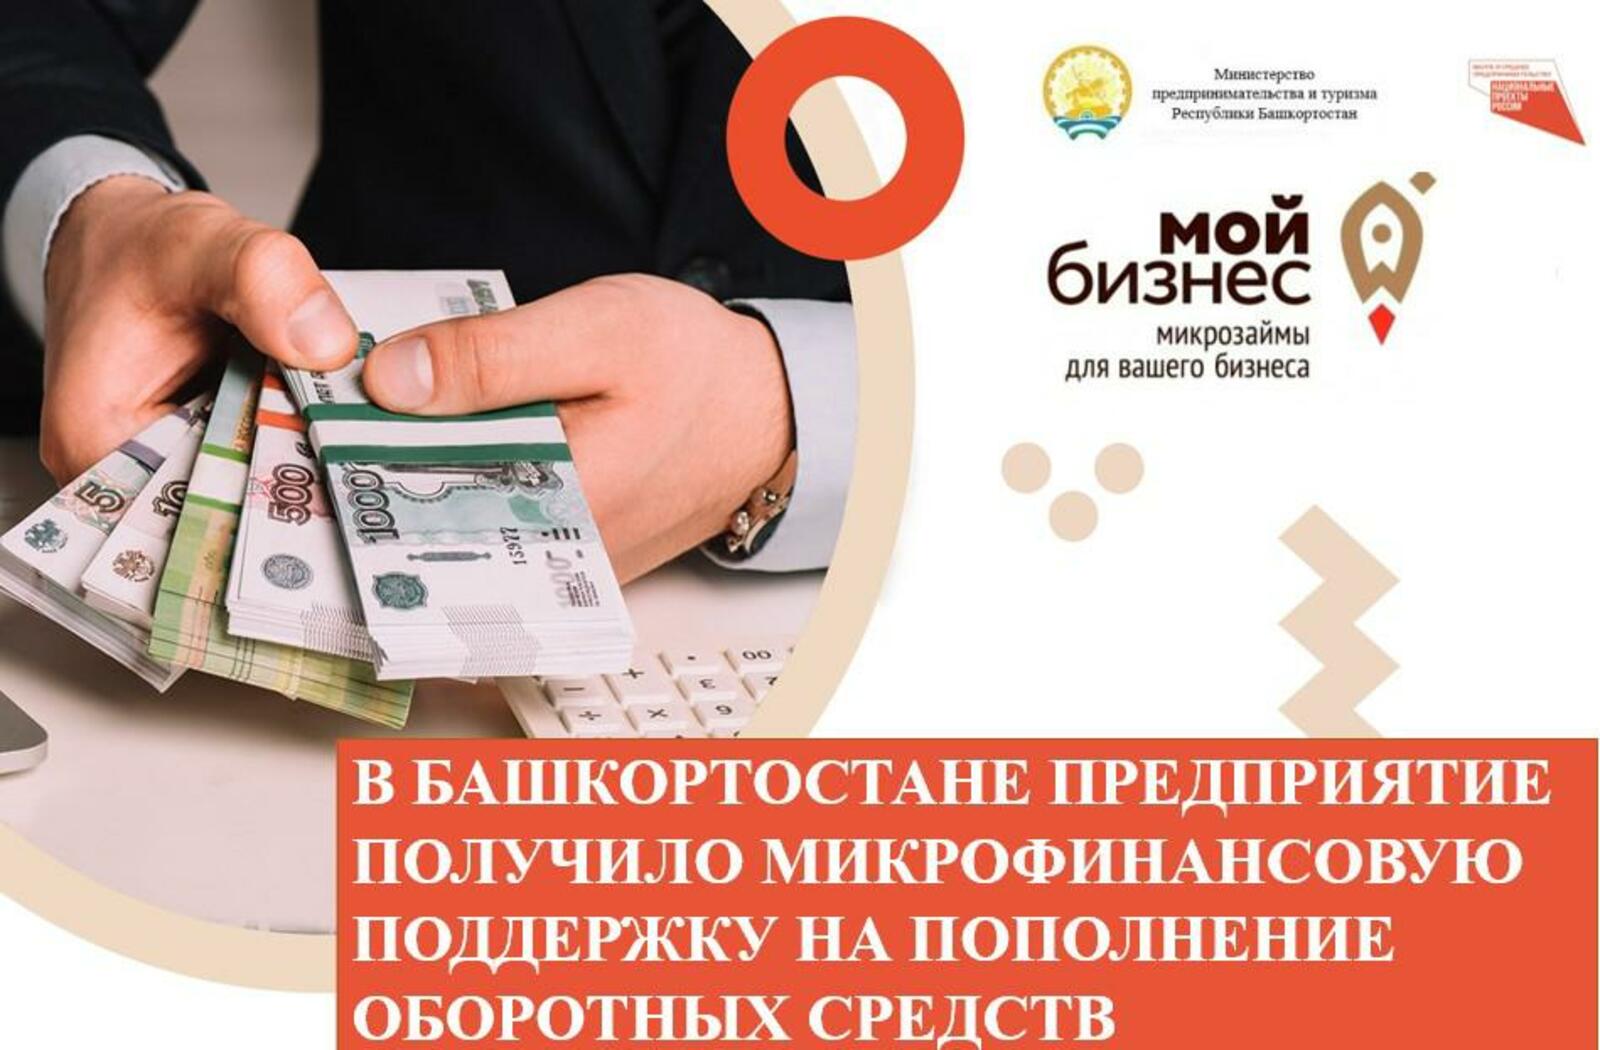 В Башкортостане предприятие получило микрофинансовую поддержку на пополнение оборотных средств